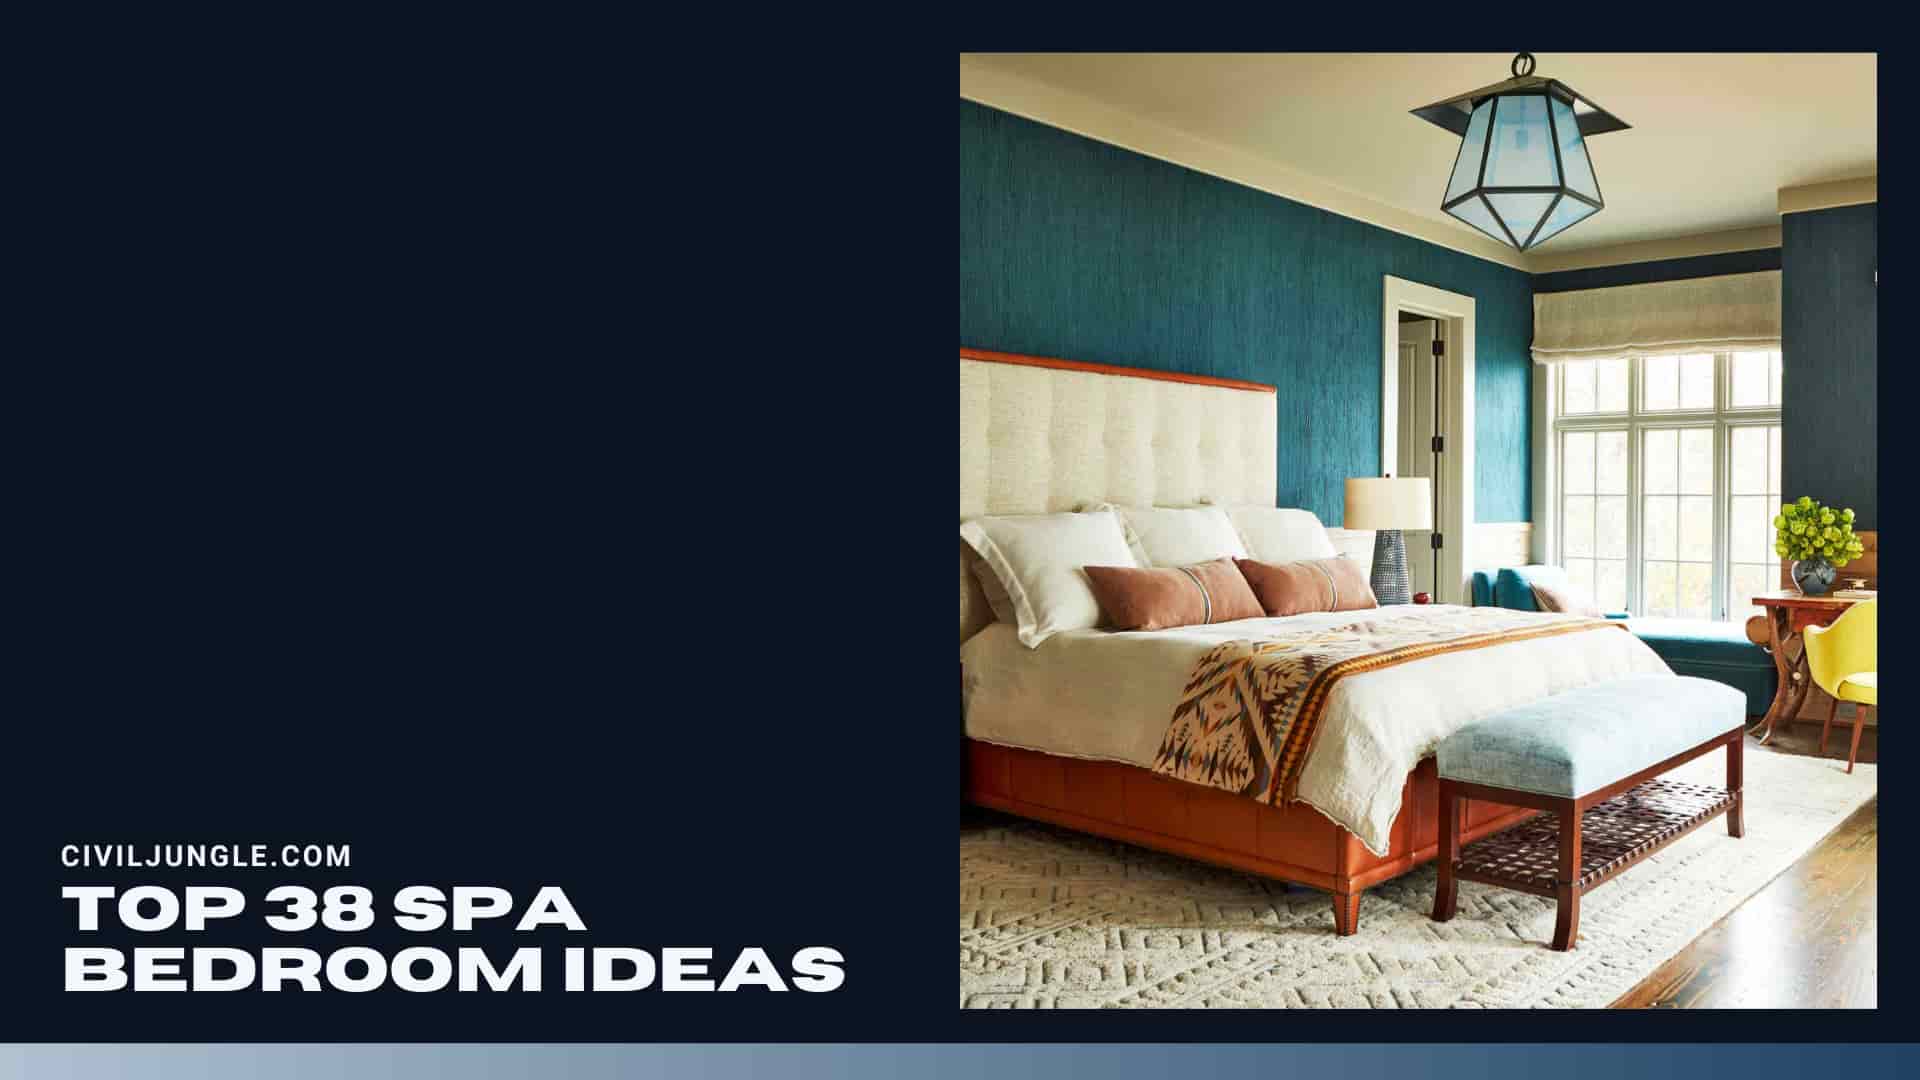 Top 38 Spa Bedroom Ideas